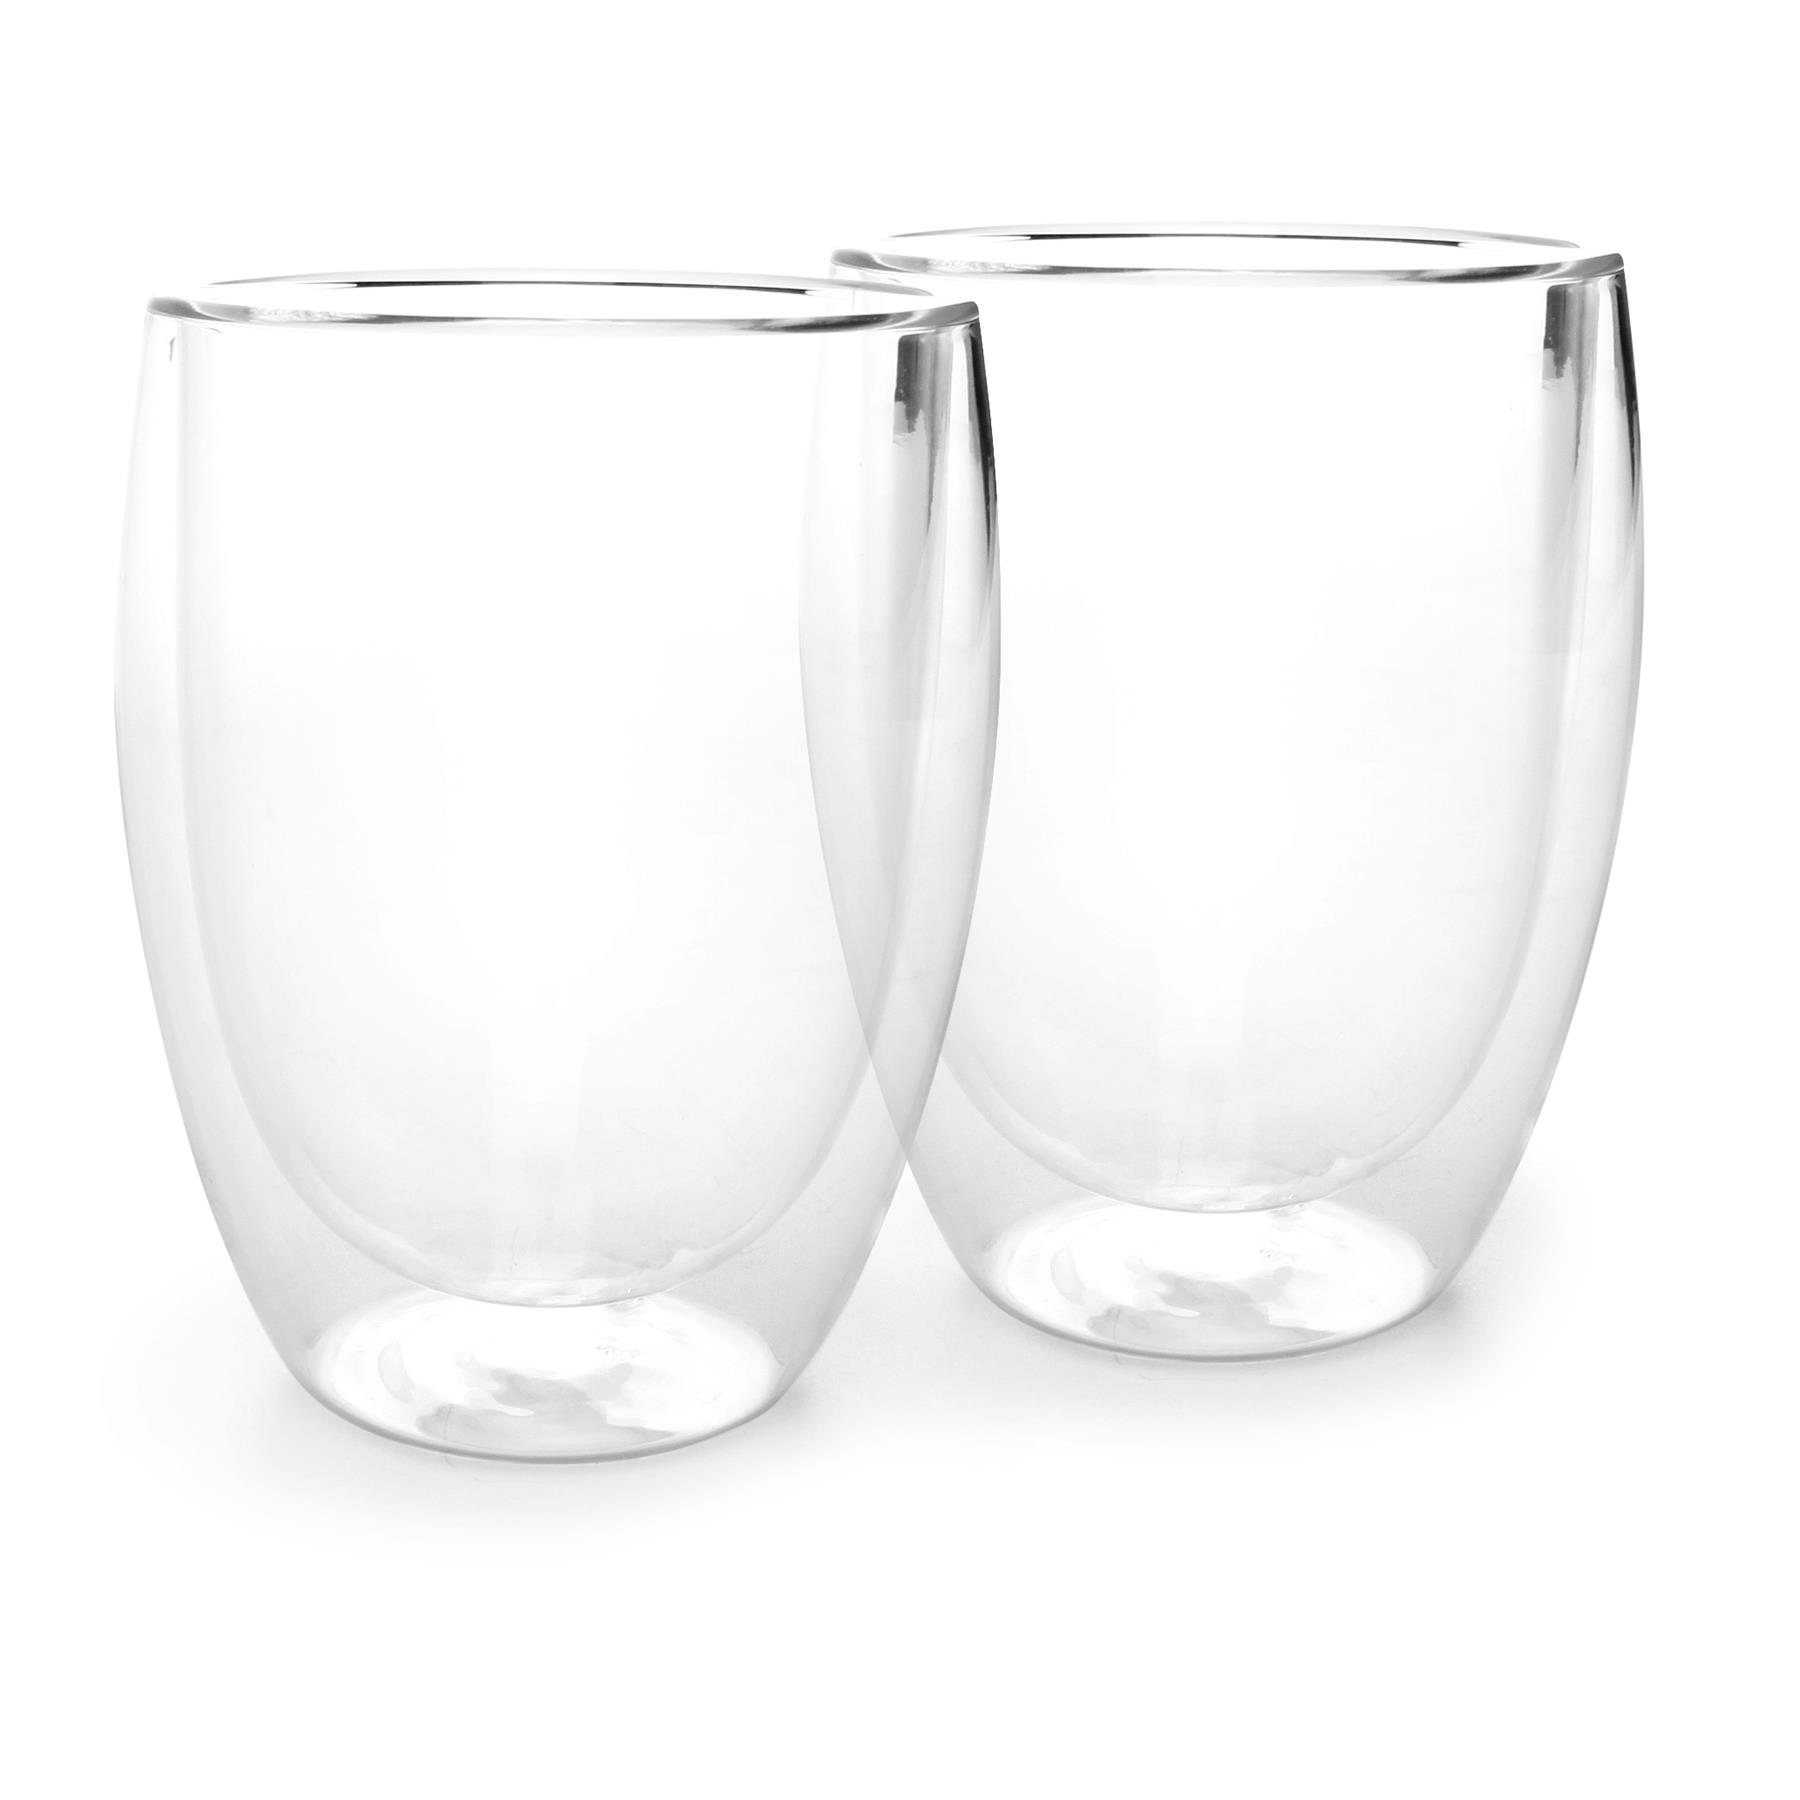 Yong Vienna Dubbelwandig Glas 0,35 2 st. kopen? shop bij vtwonen by fonQ!